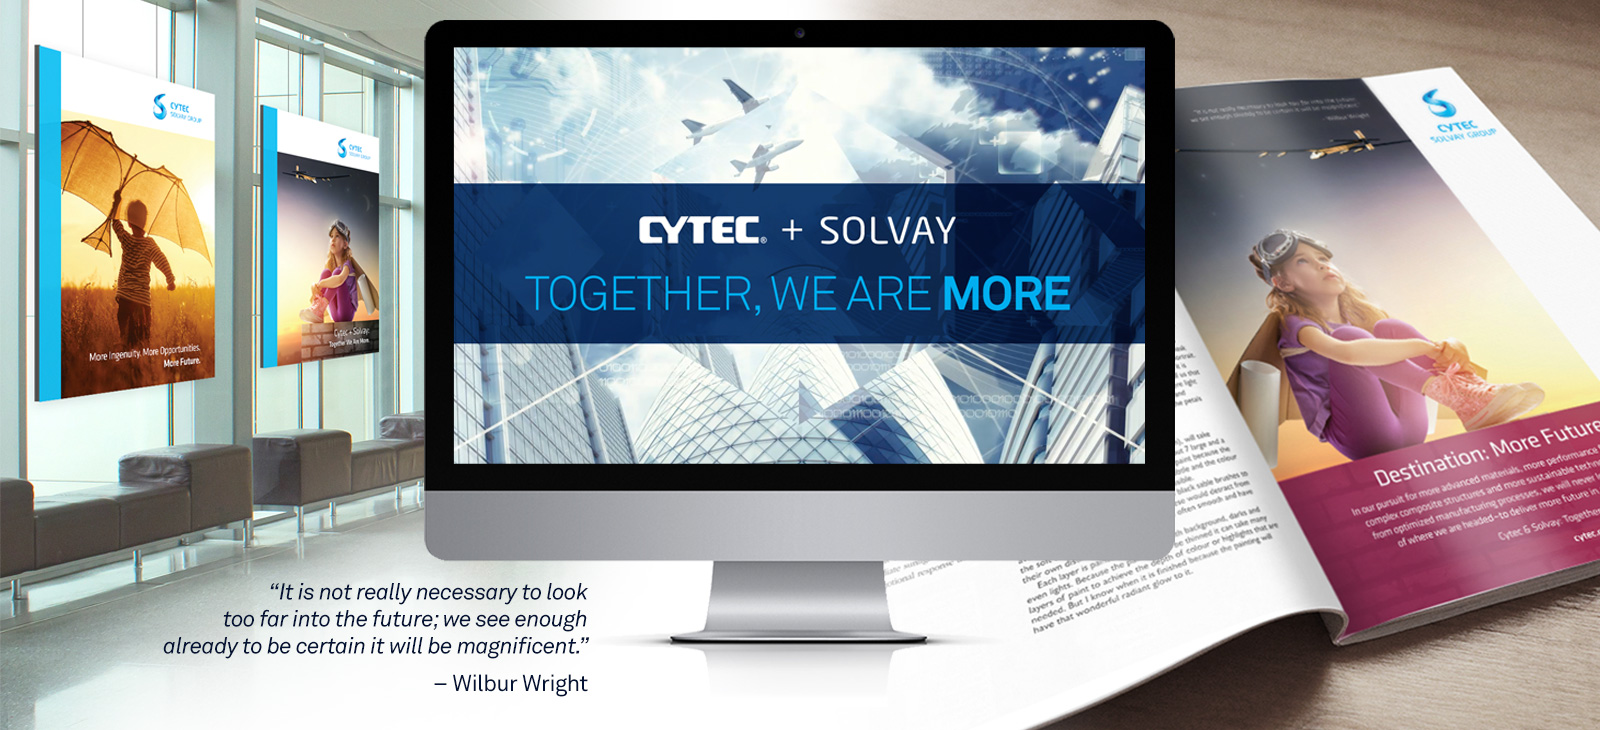 Solvay Cytec Brand Messaging